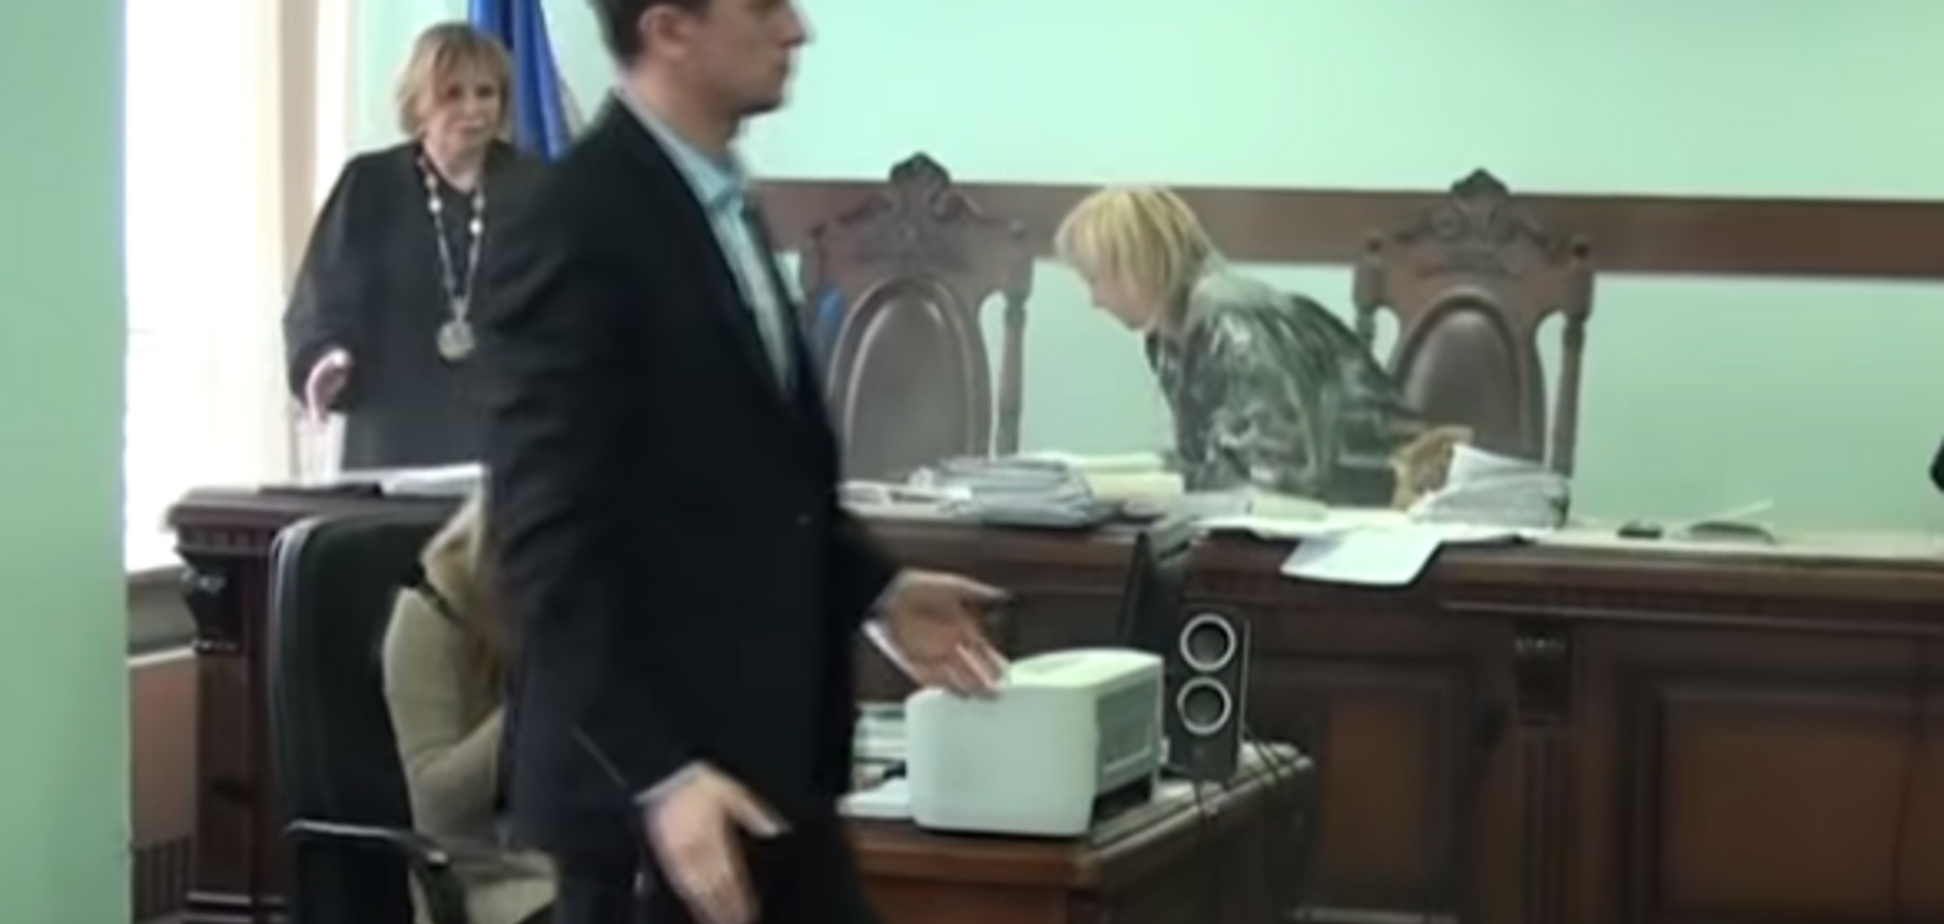 'Ми повинні боротися': у Києві суддю обсипали борошном на засіданні